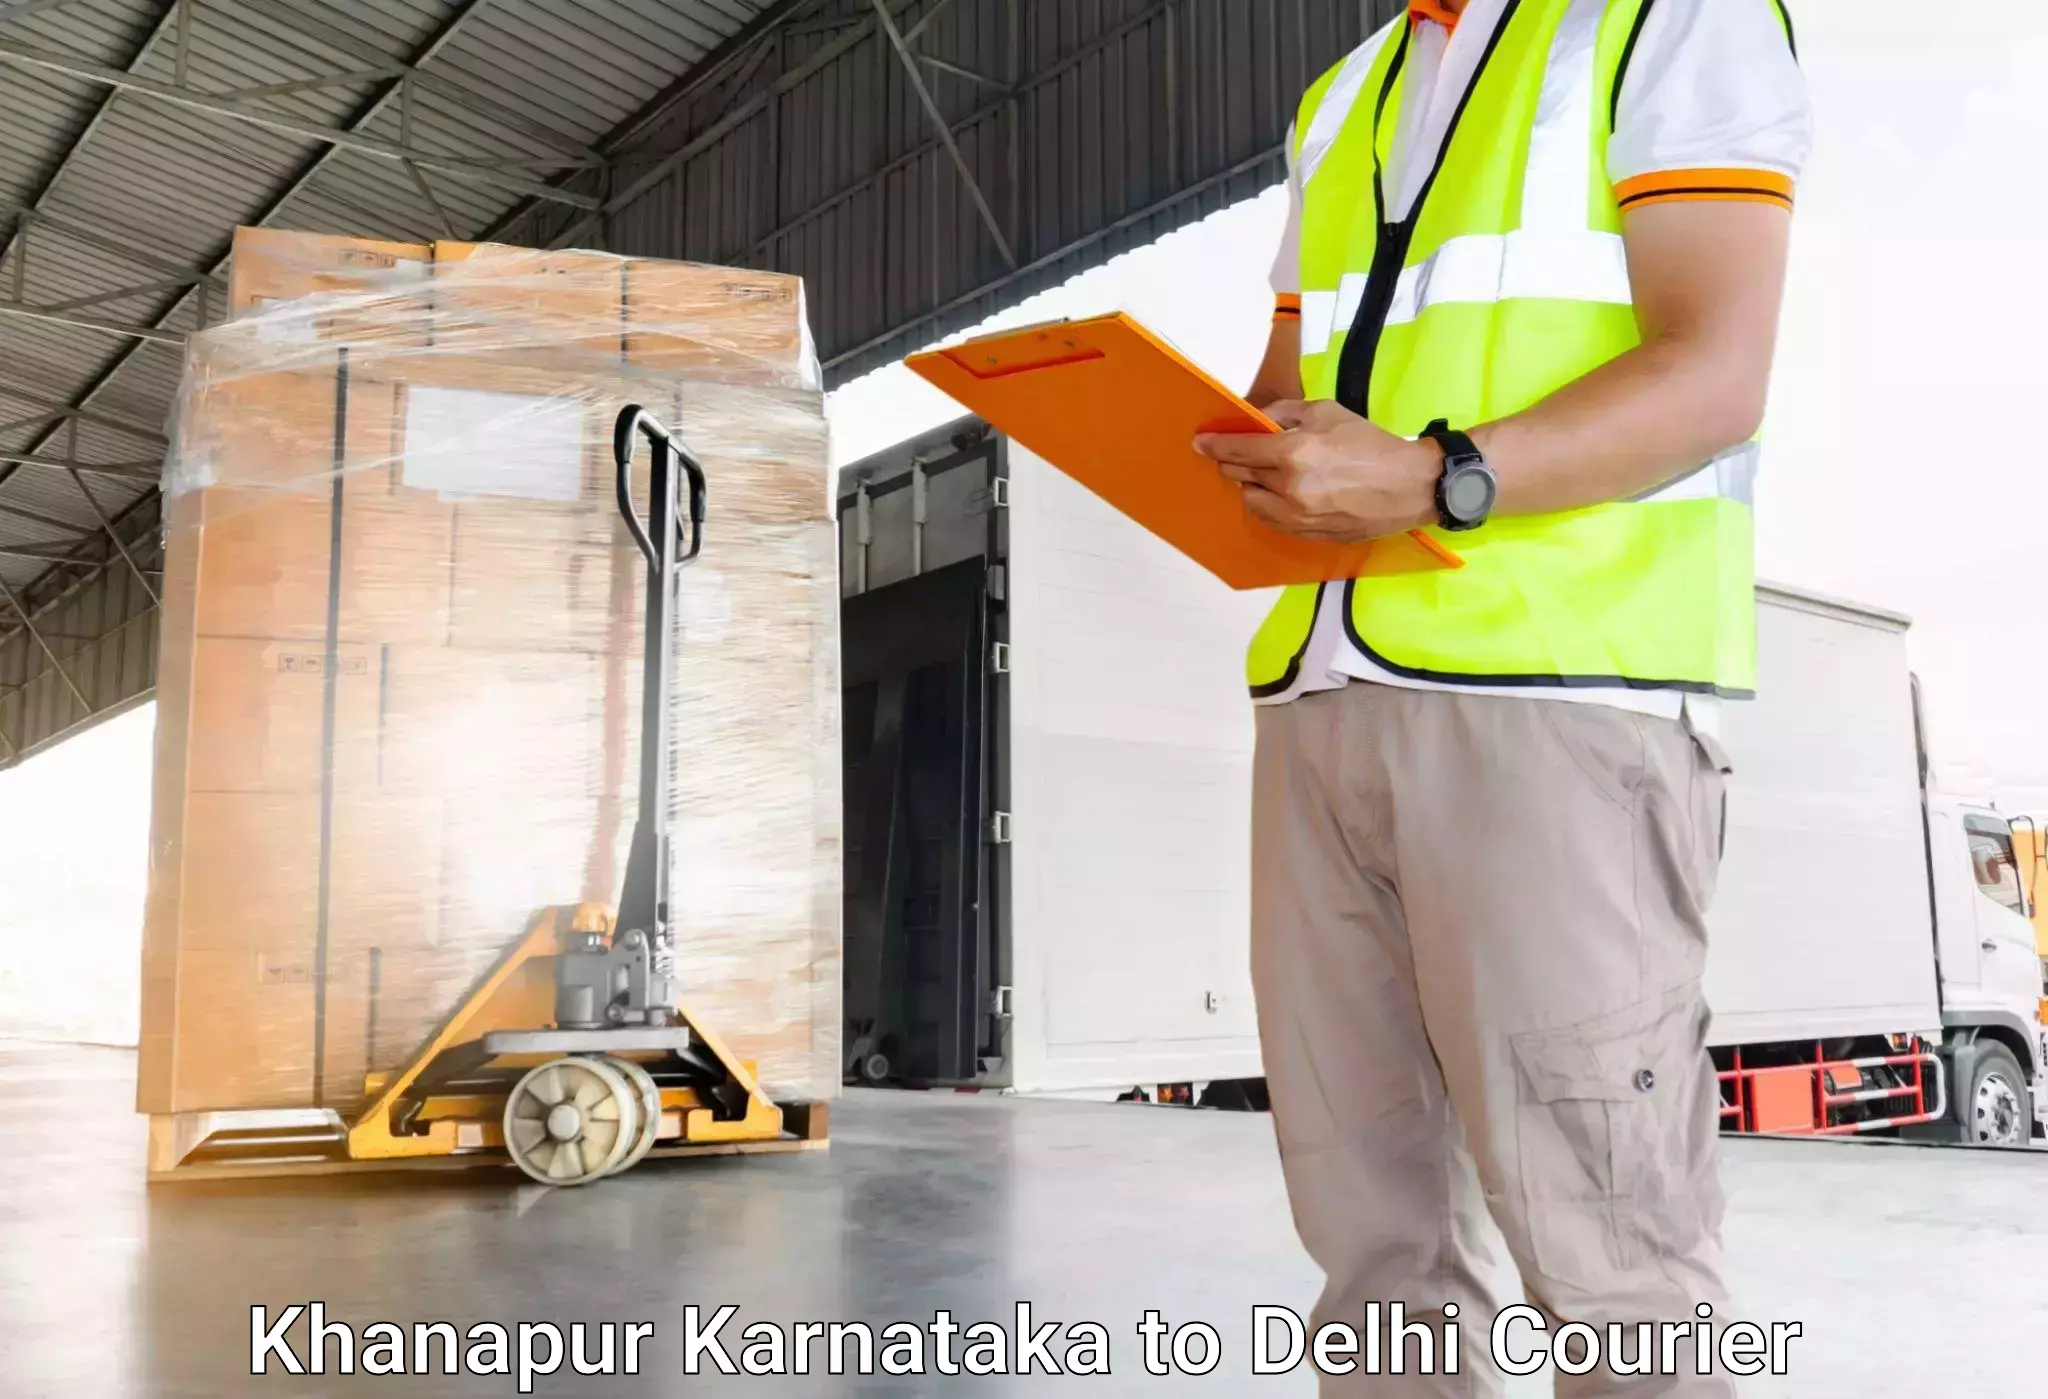 Luggage transfer service Khanapur Karnataka to Sarojini Nagar